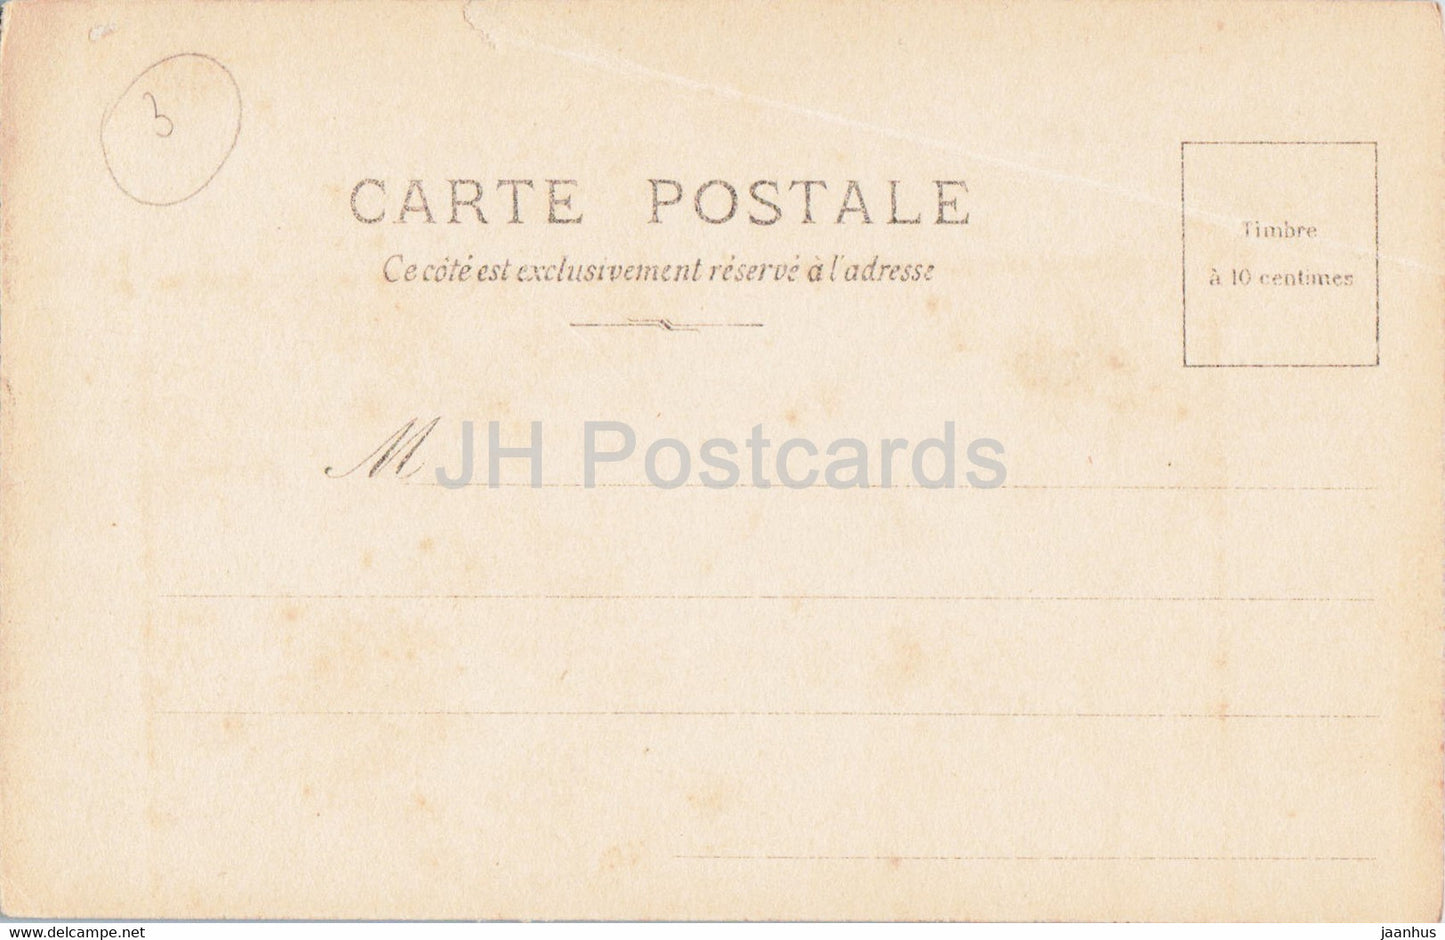 Carte de voeux de Pâques - Souvenir de Paques - SIP - 20 - carte postale ancienne - France - inutilisée